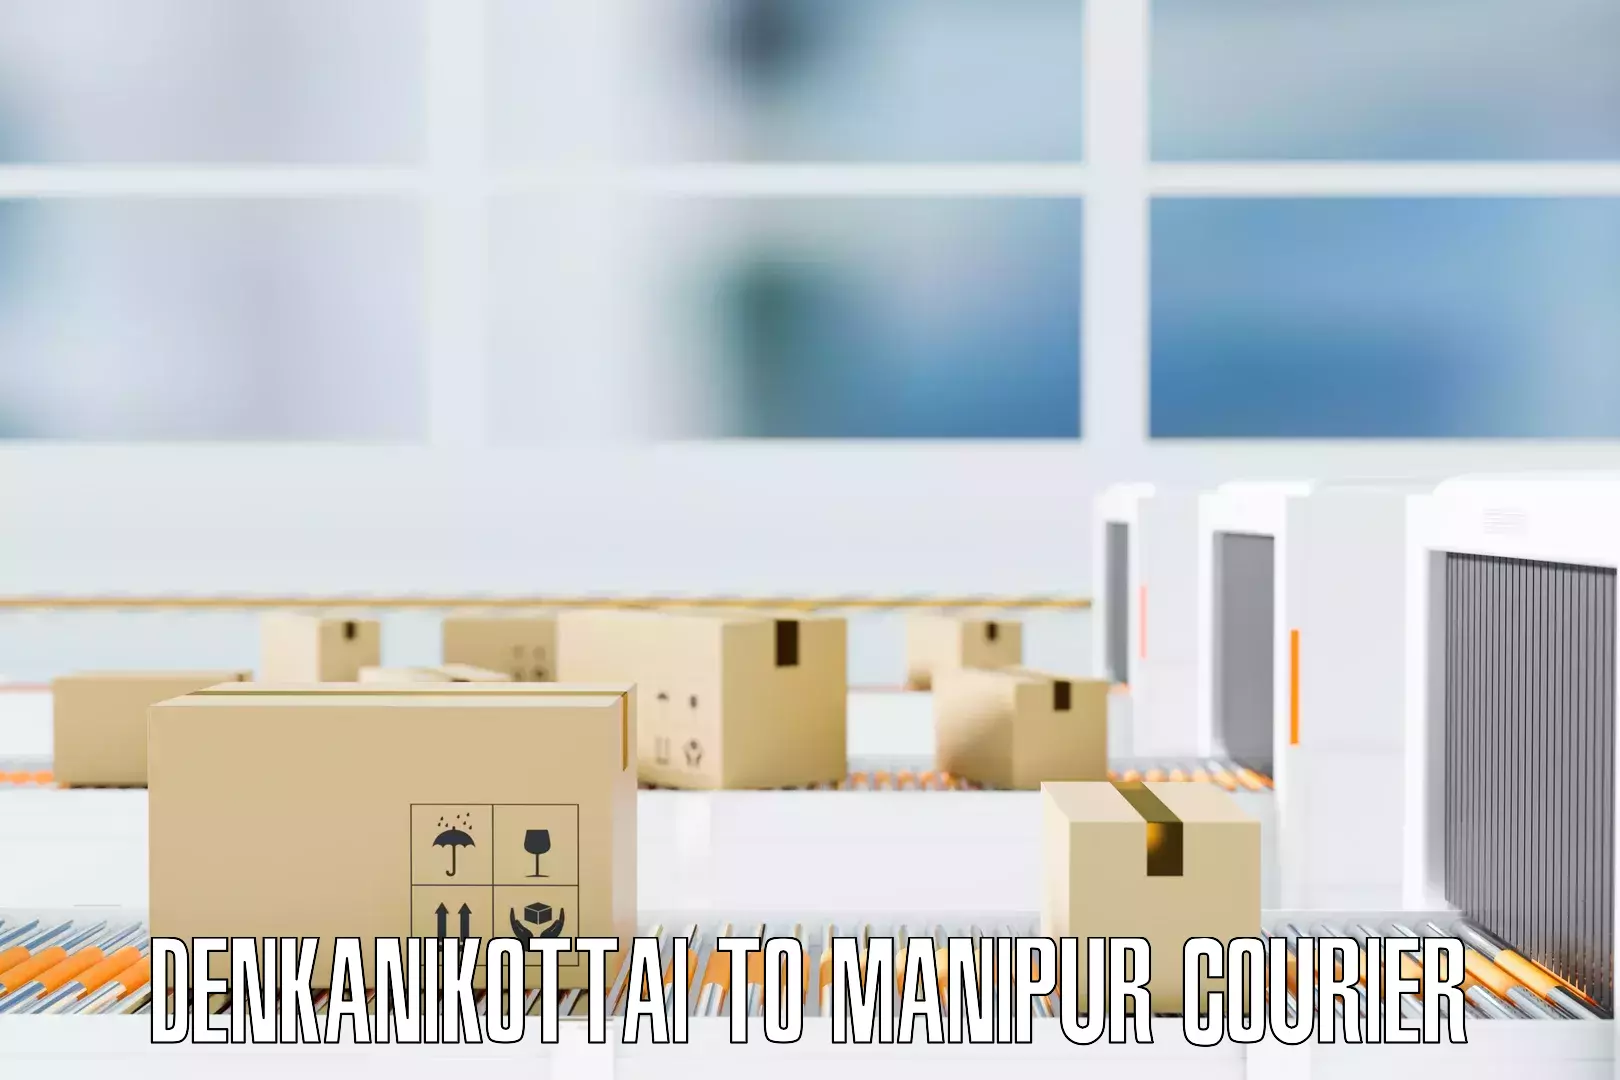 Efficient furniture movers in Denkanikottai to Chandel